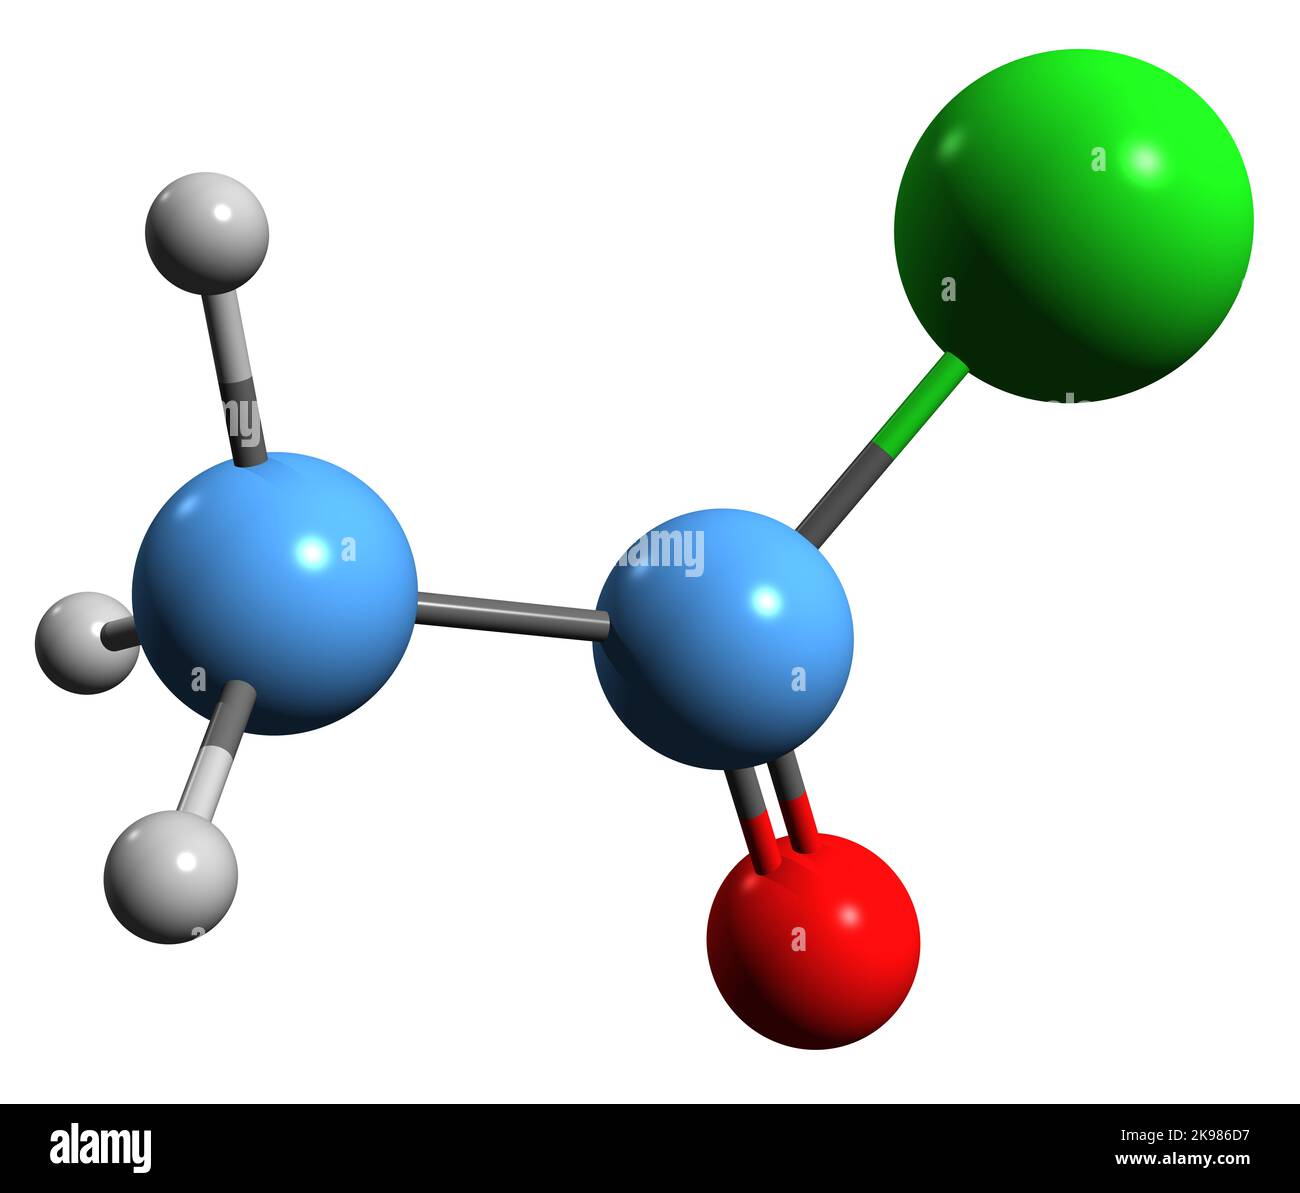 3D Bild der Skelettformel von Acetylchlorid - molekulare chemische Struktur von Acetylchlorid isoliert auf weißem Hintergrund Stockfoto